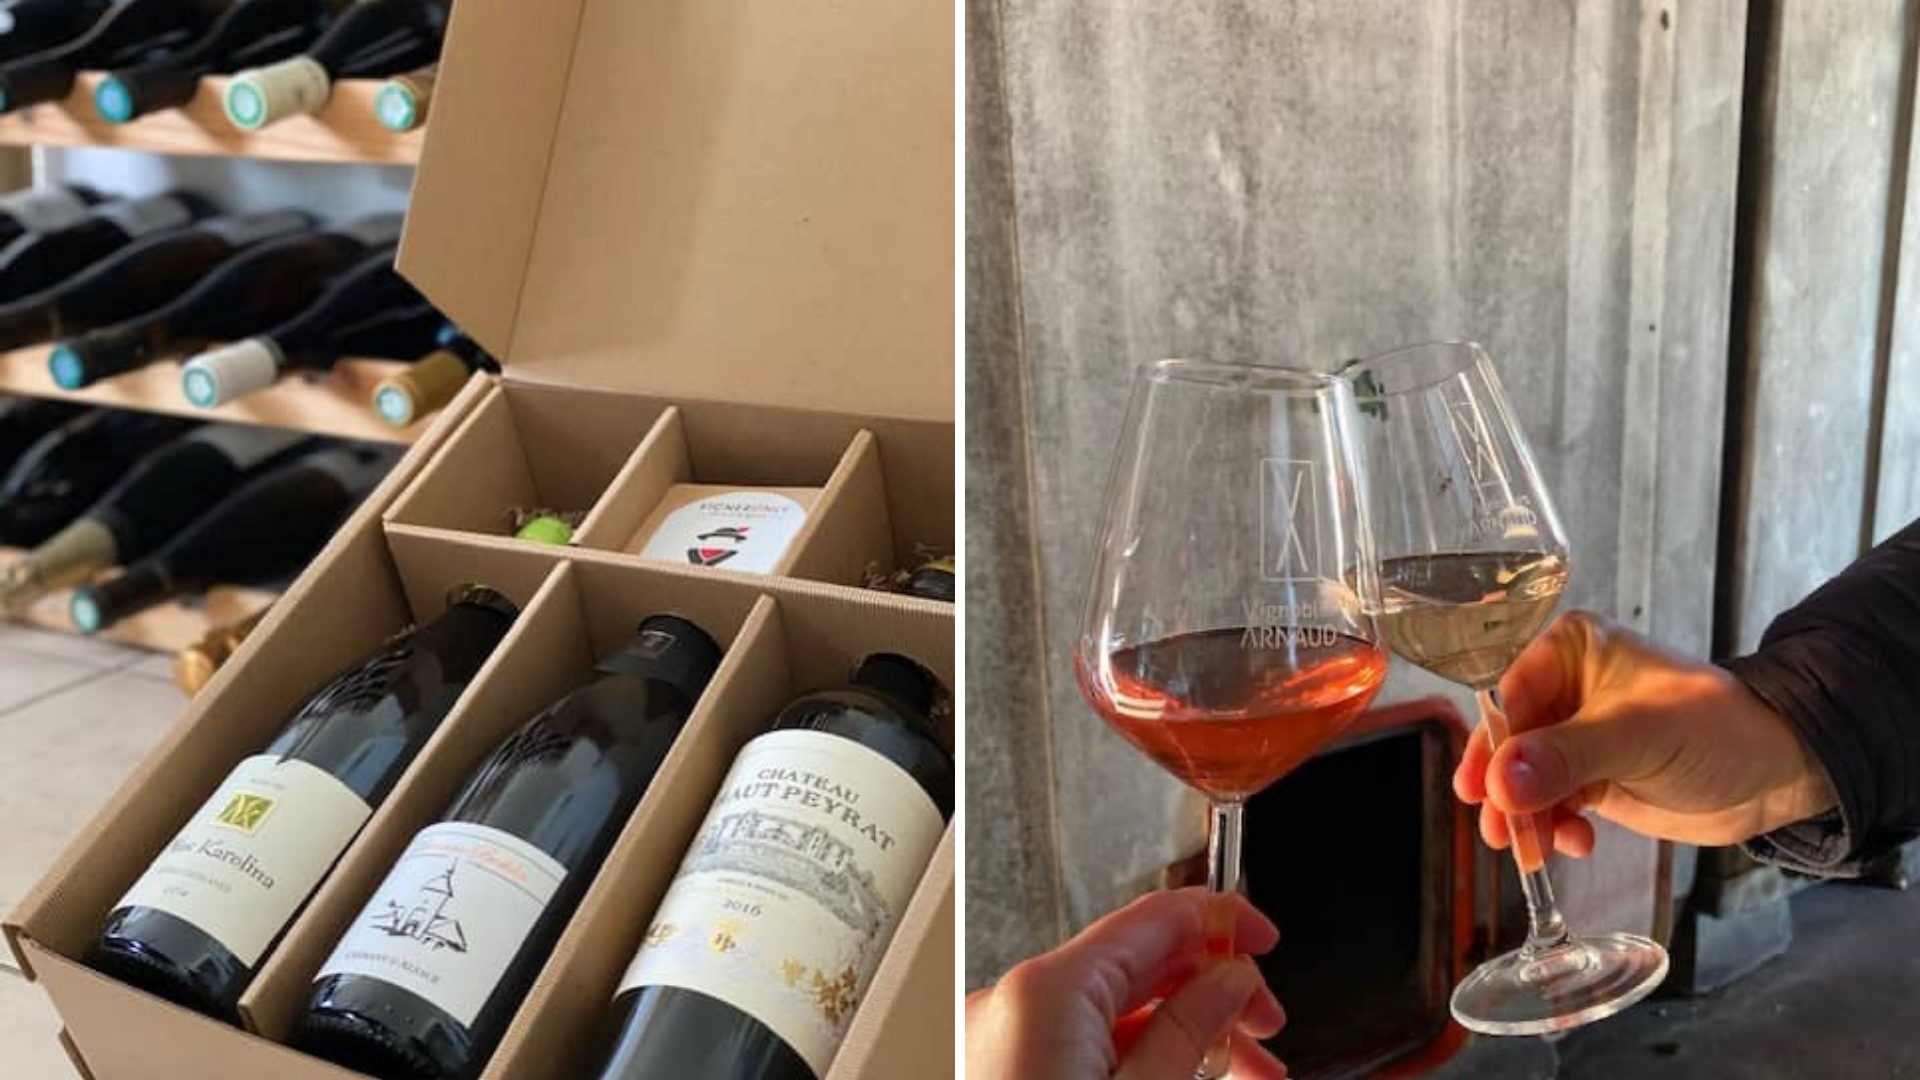 photos reprÃ©sentant deux verres de vin rouge et une caisse avec des bouteilles de vin 